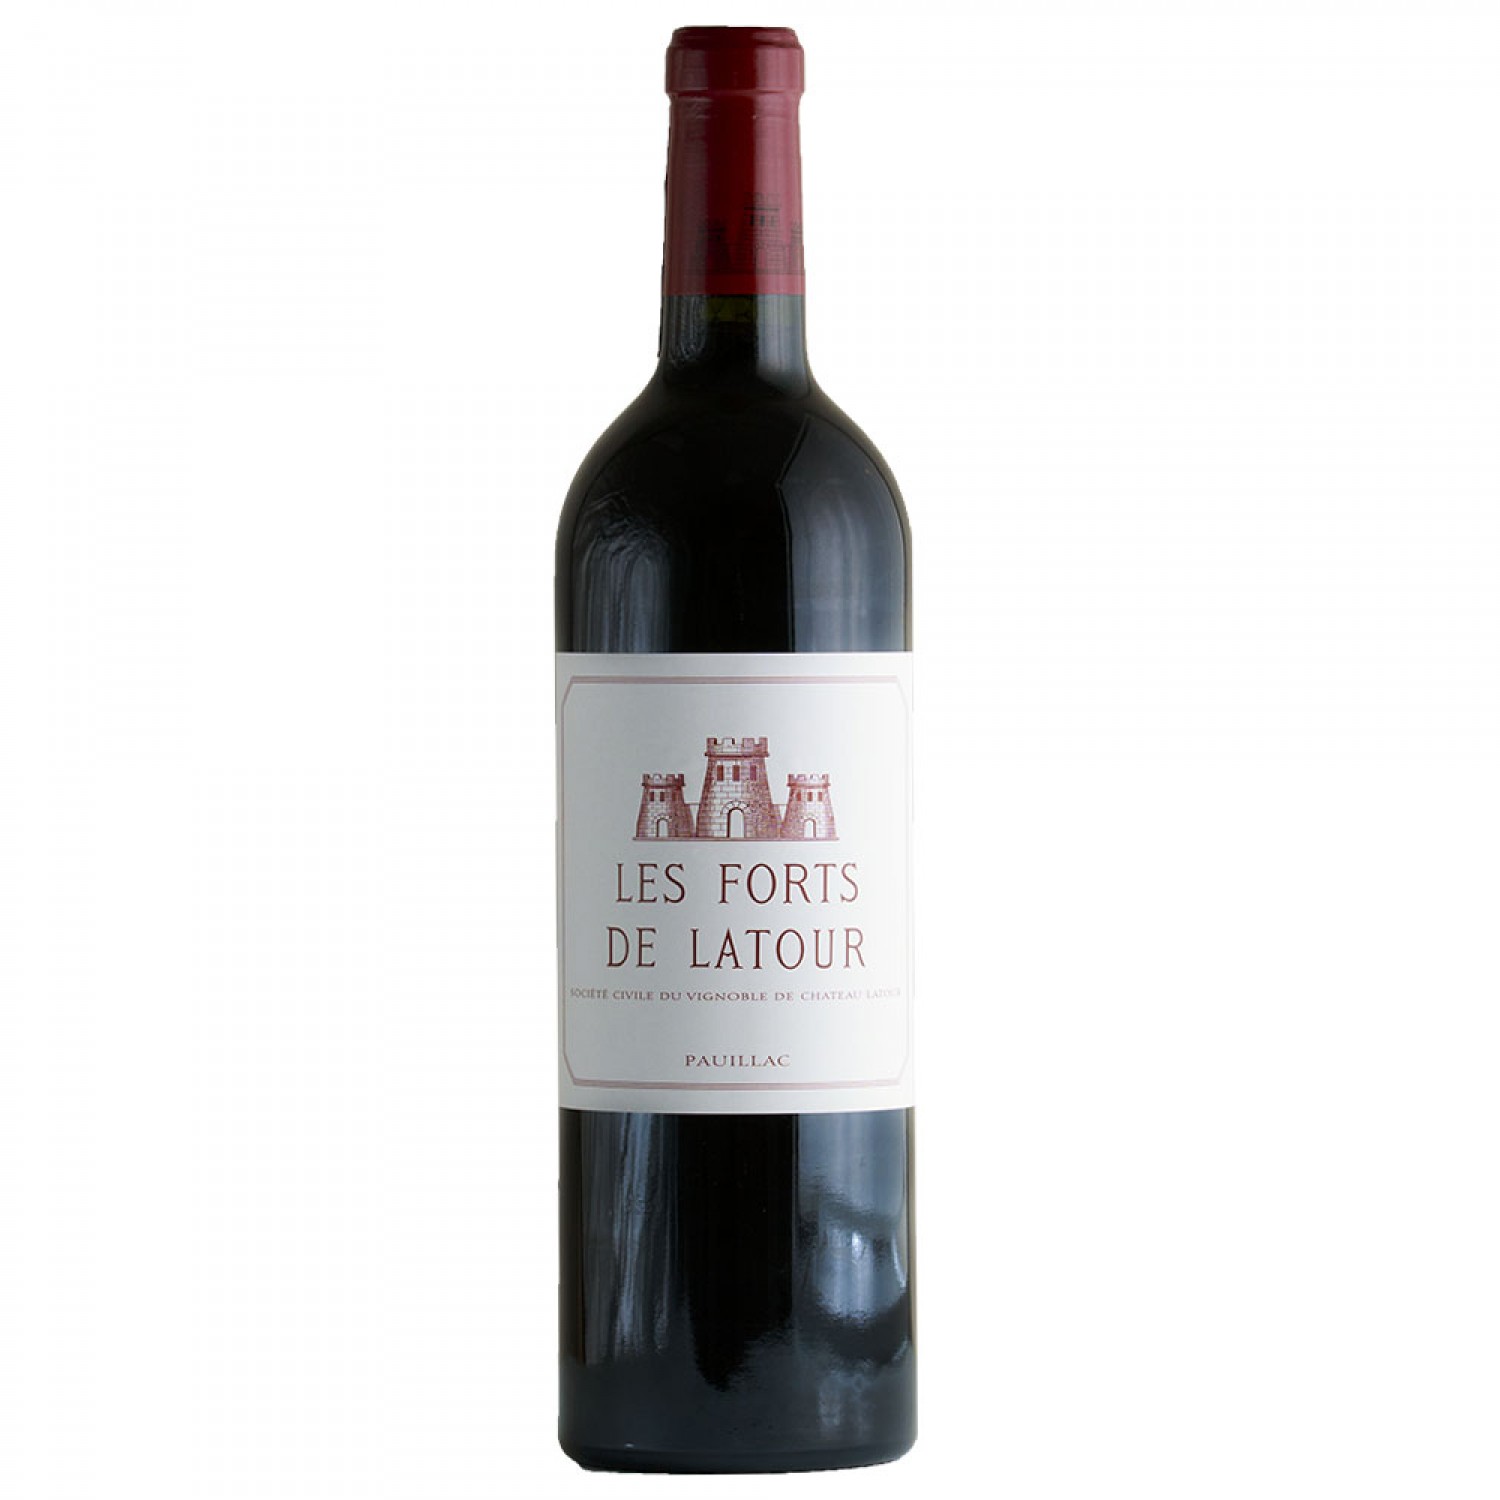 Chateau Latour 'Les Forts de Latour' 2015, Pauillac 750ml